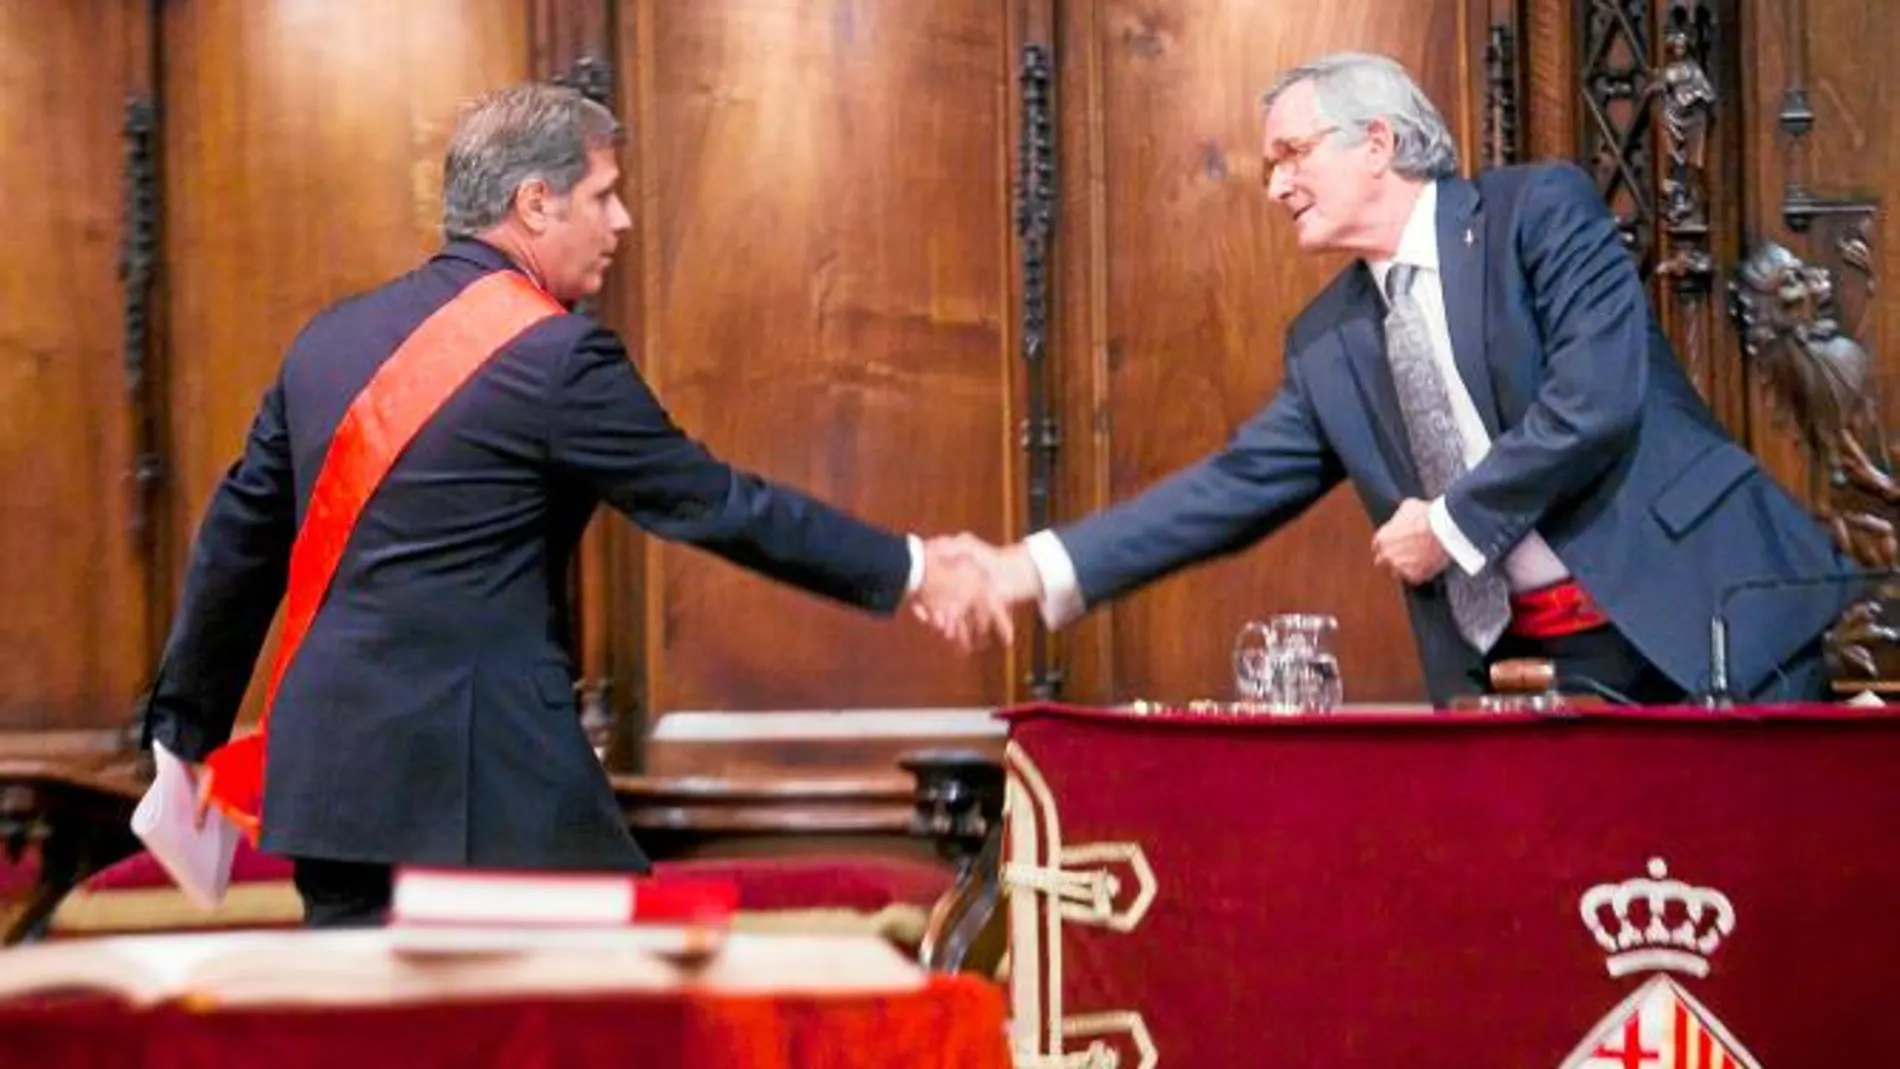 Alberto Fernández felicita al nuevo alcalde el día de la investidura